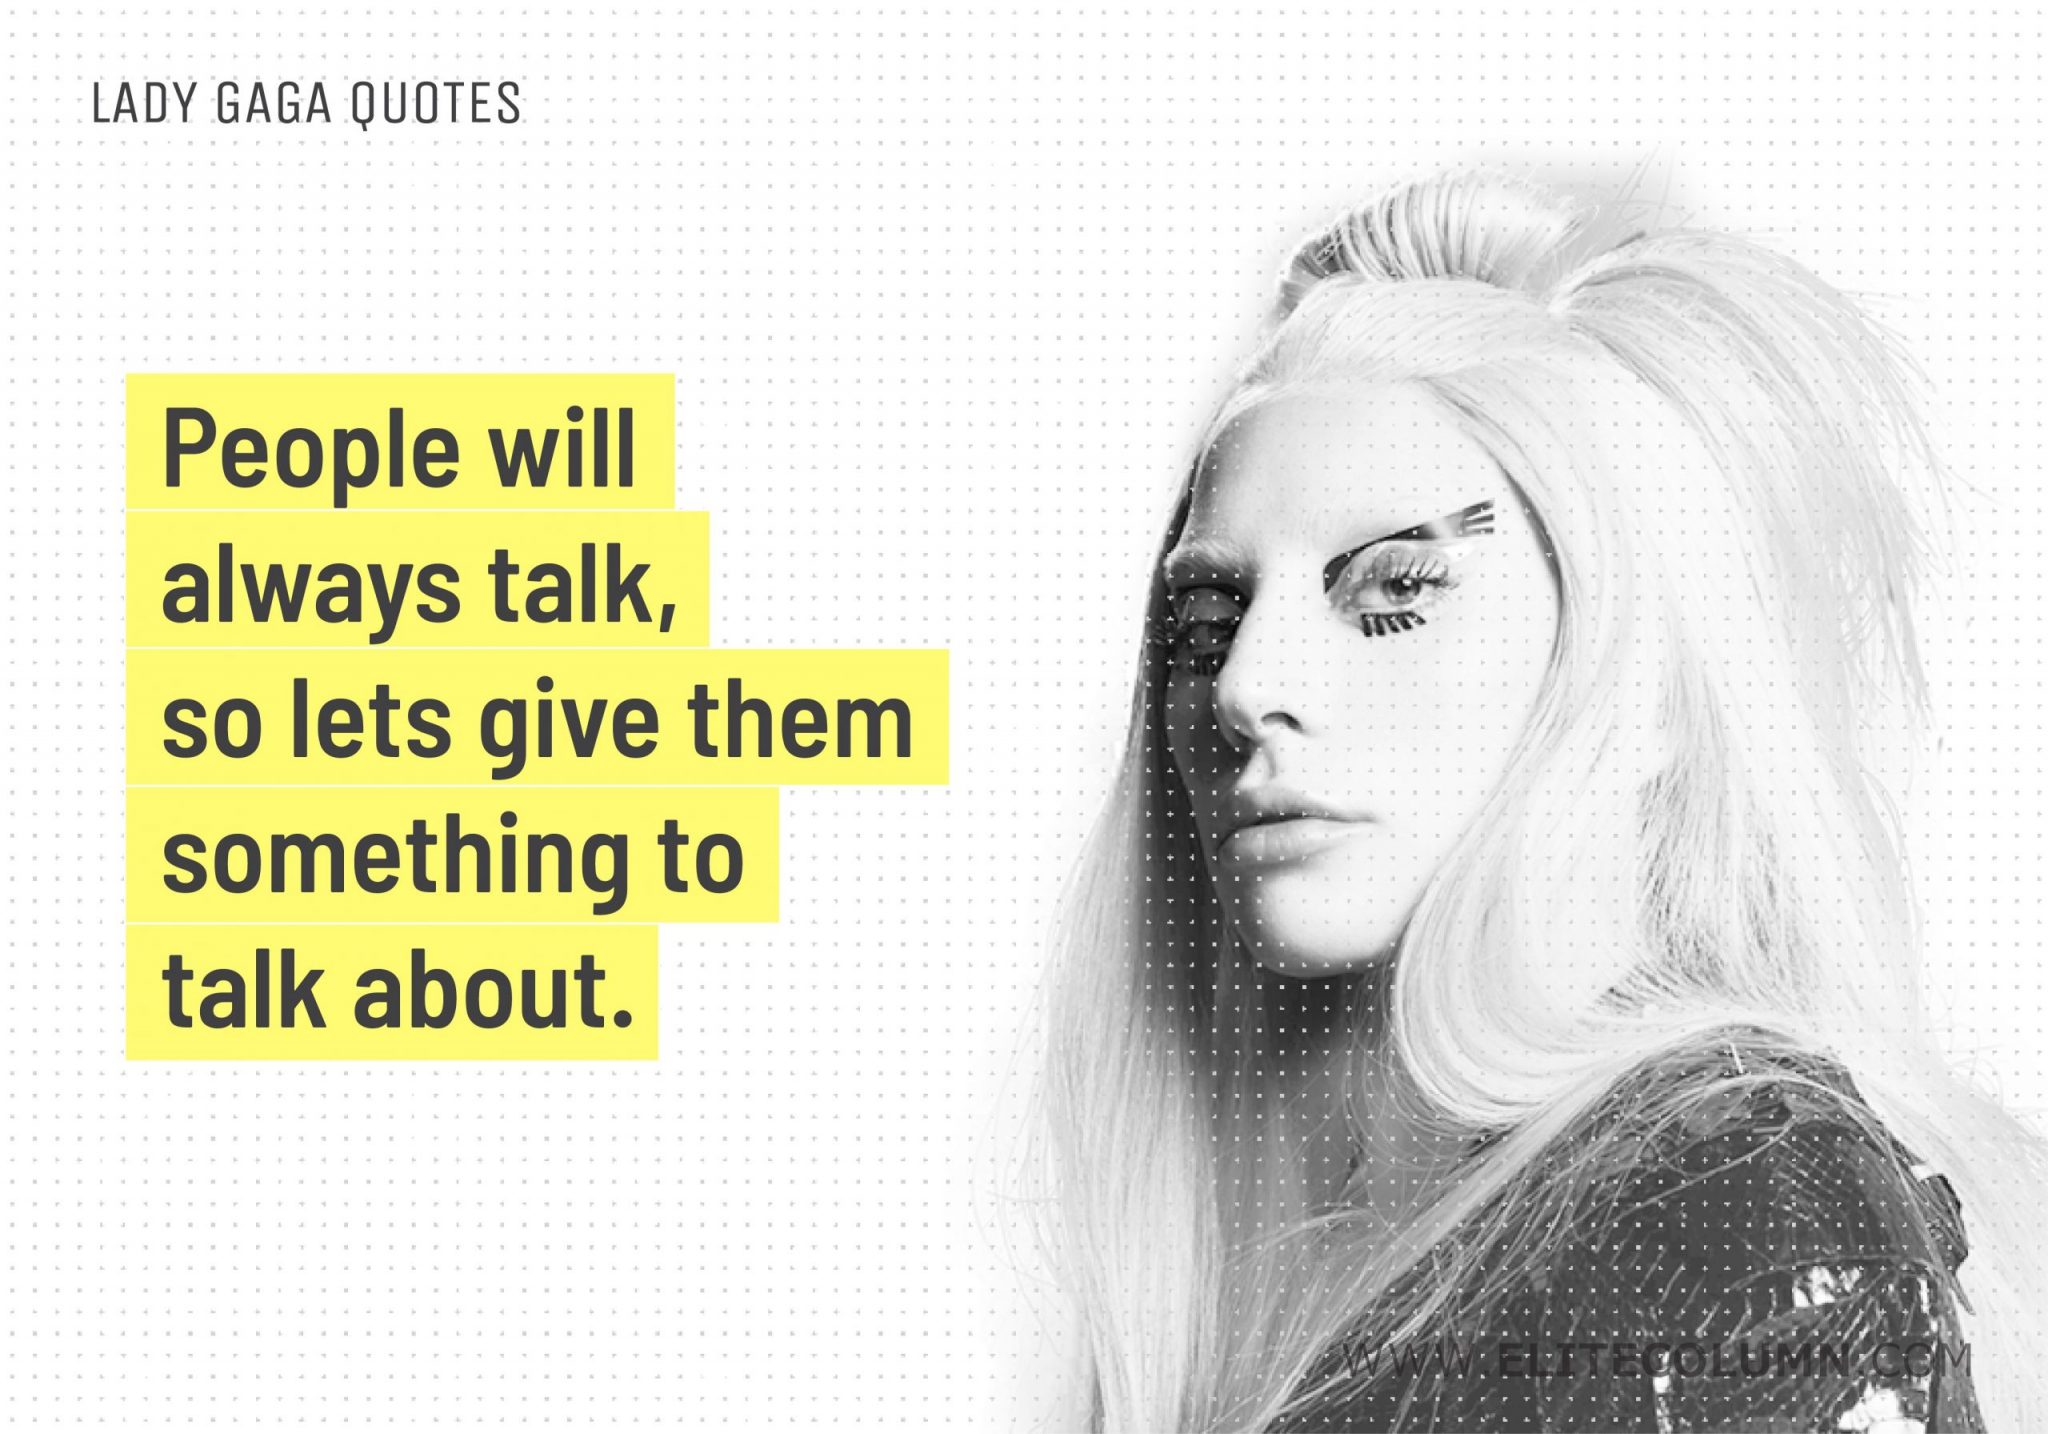 Lady Gaga Quotes (12)